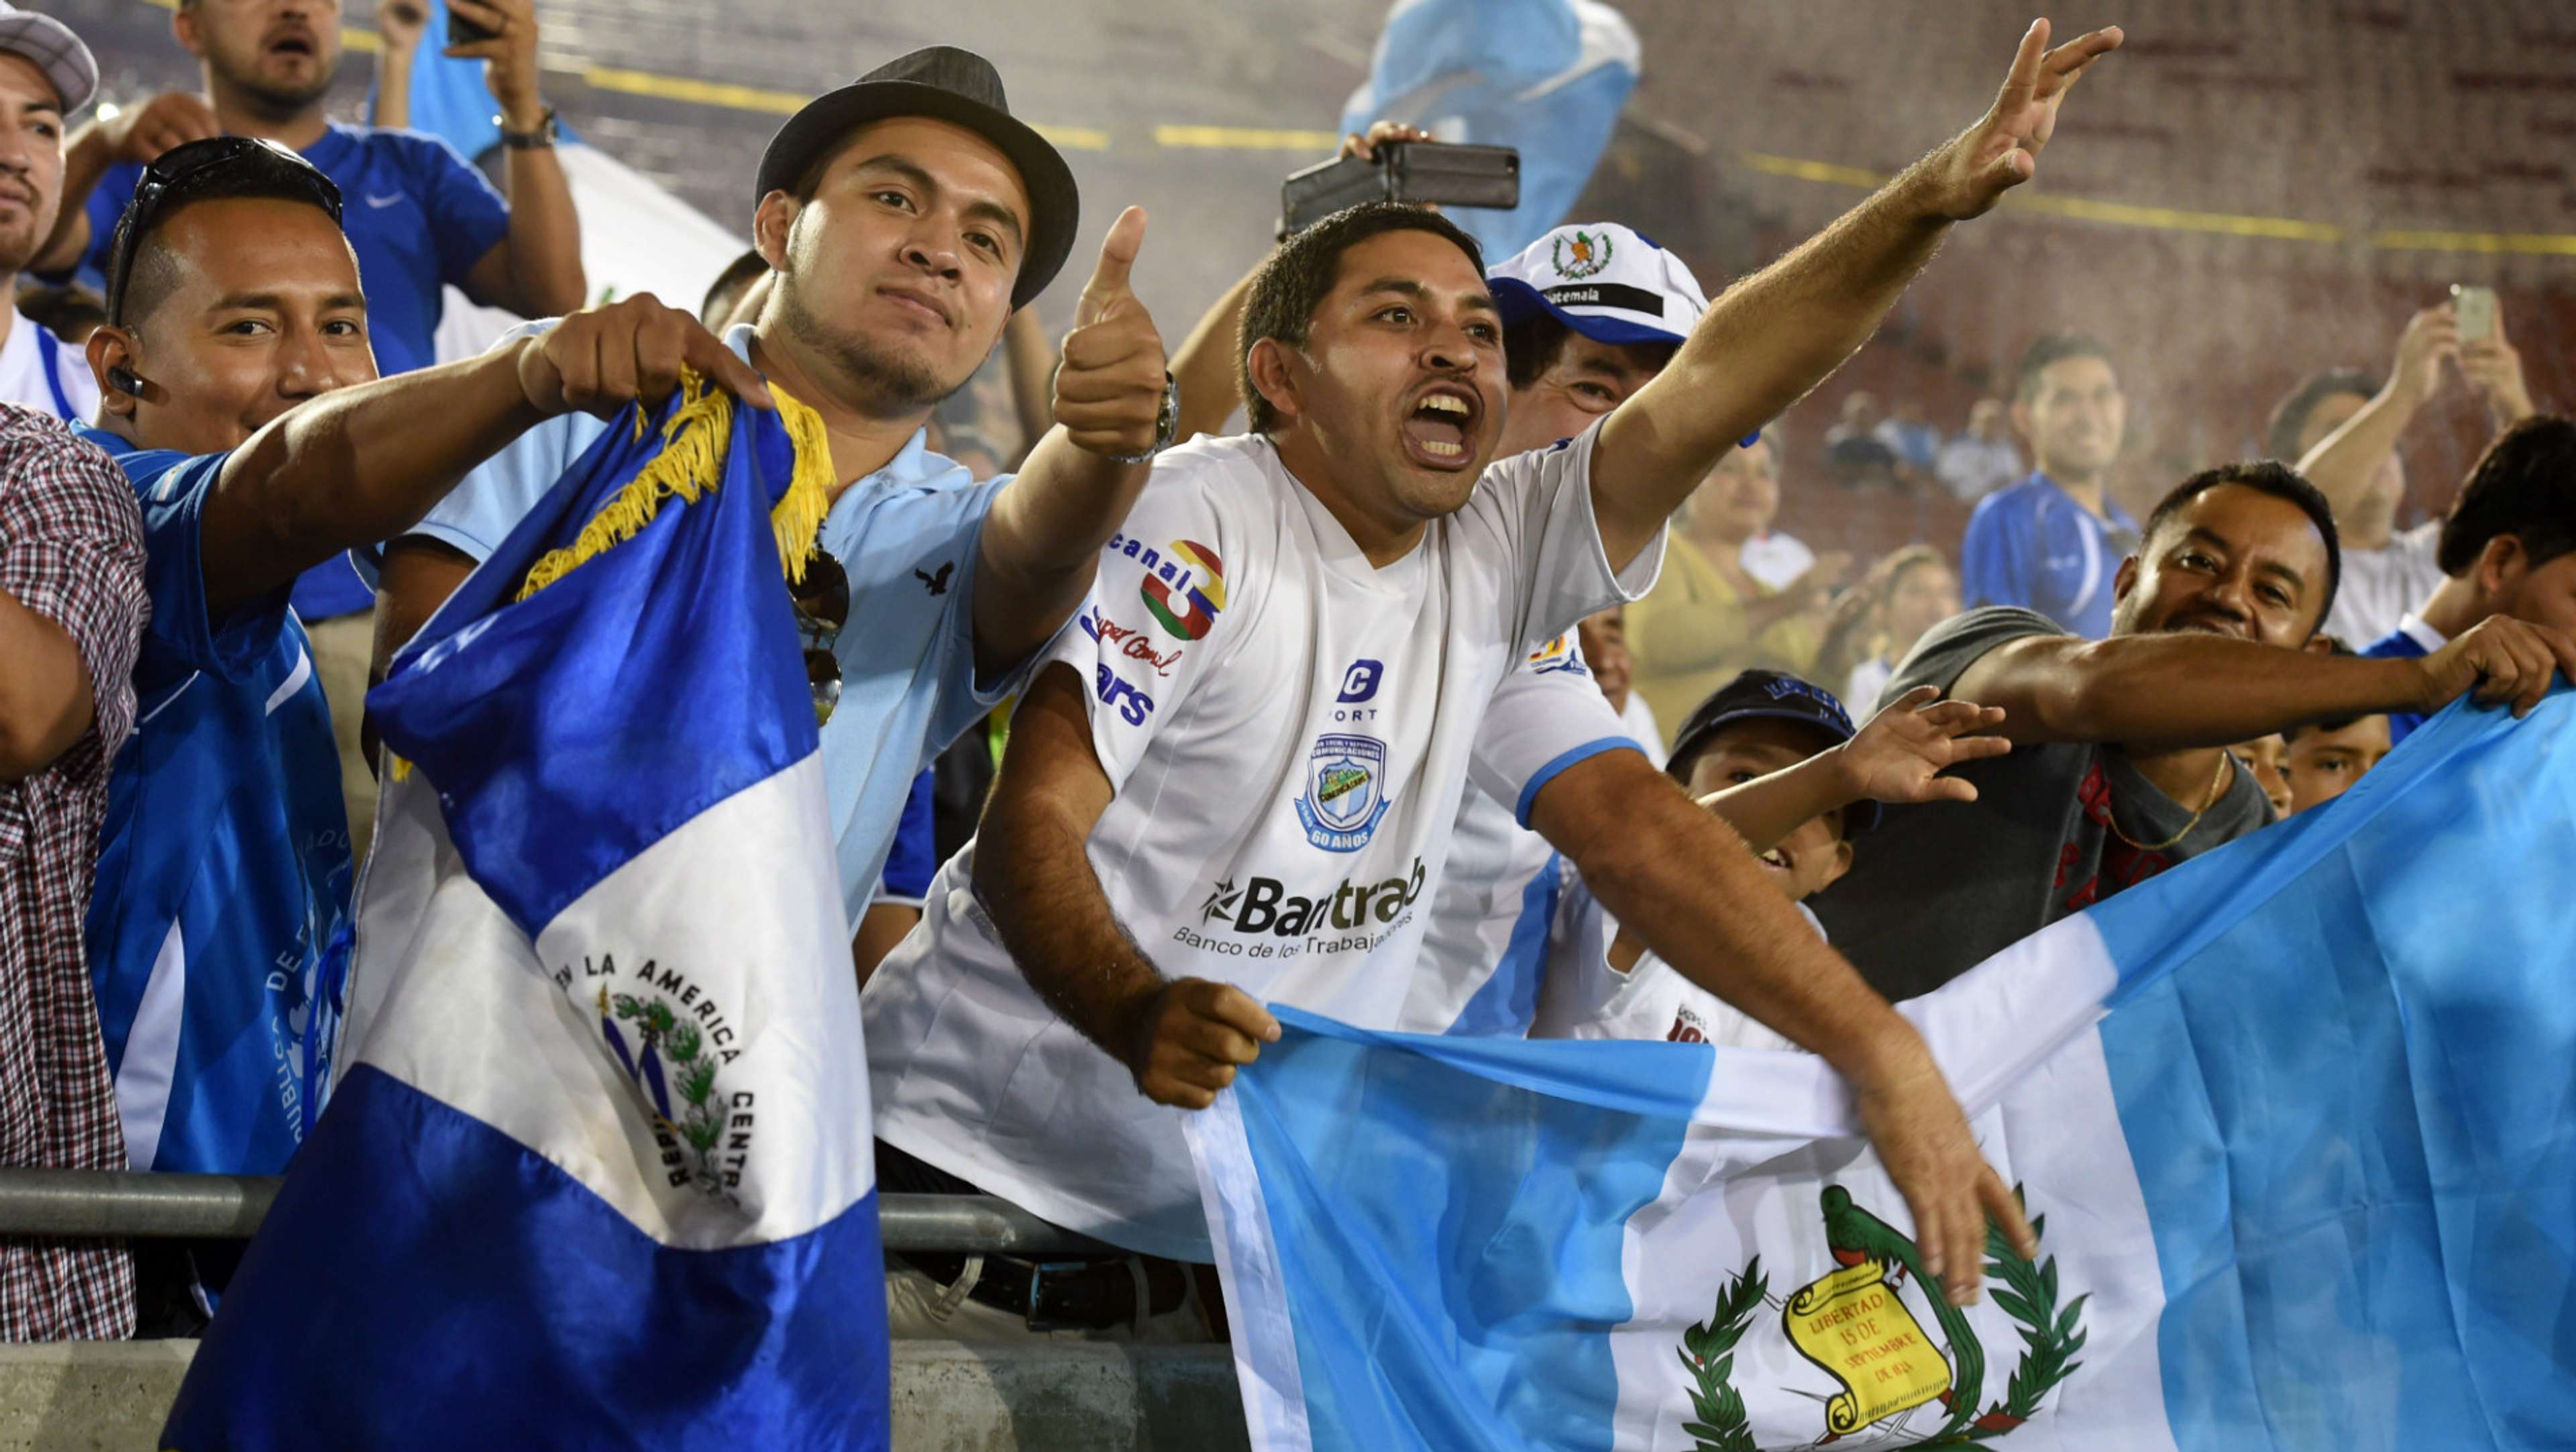 Guatemala fans